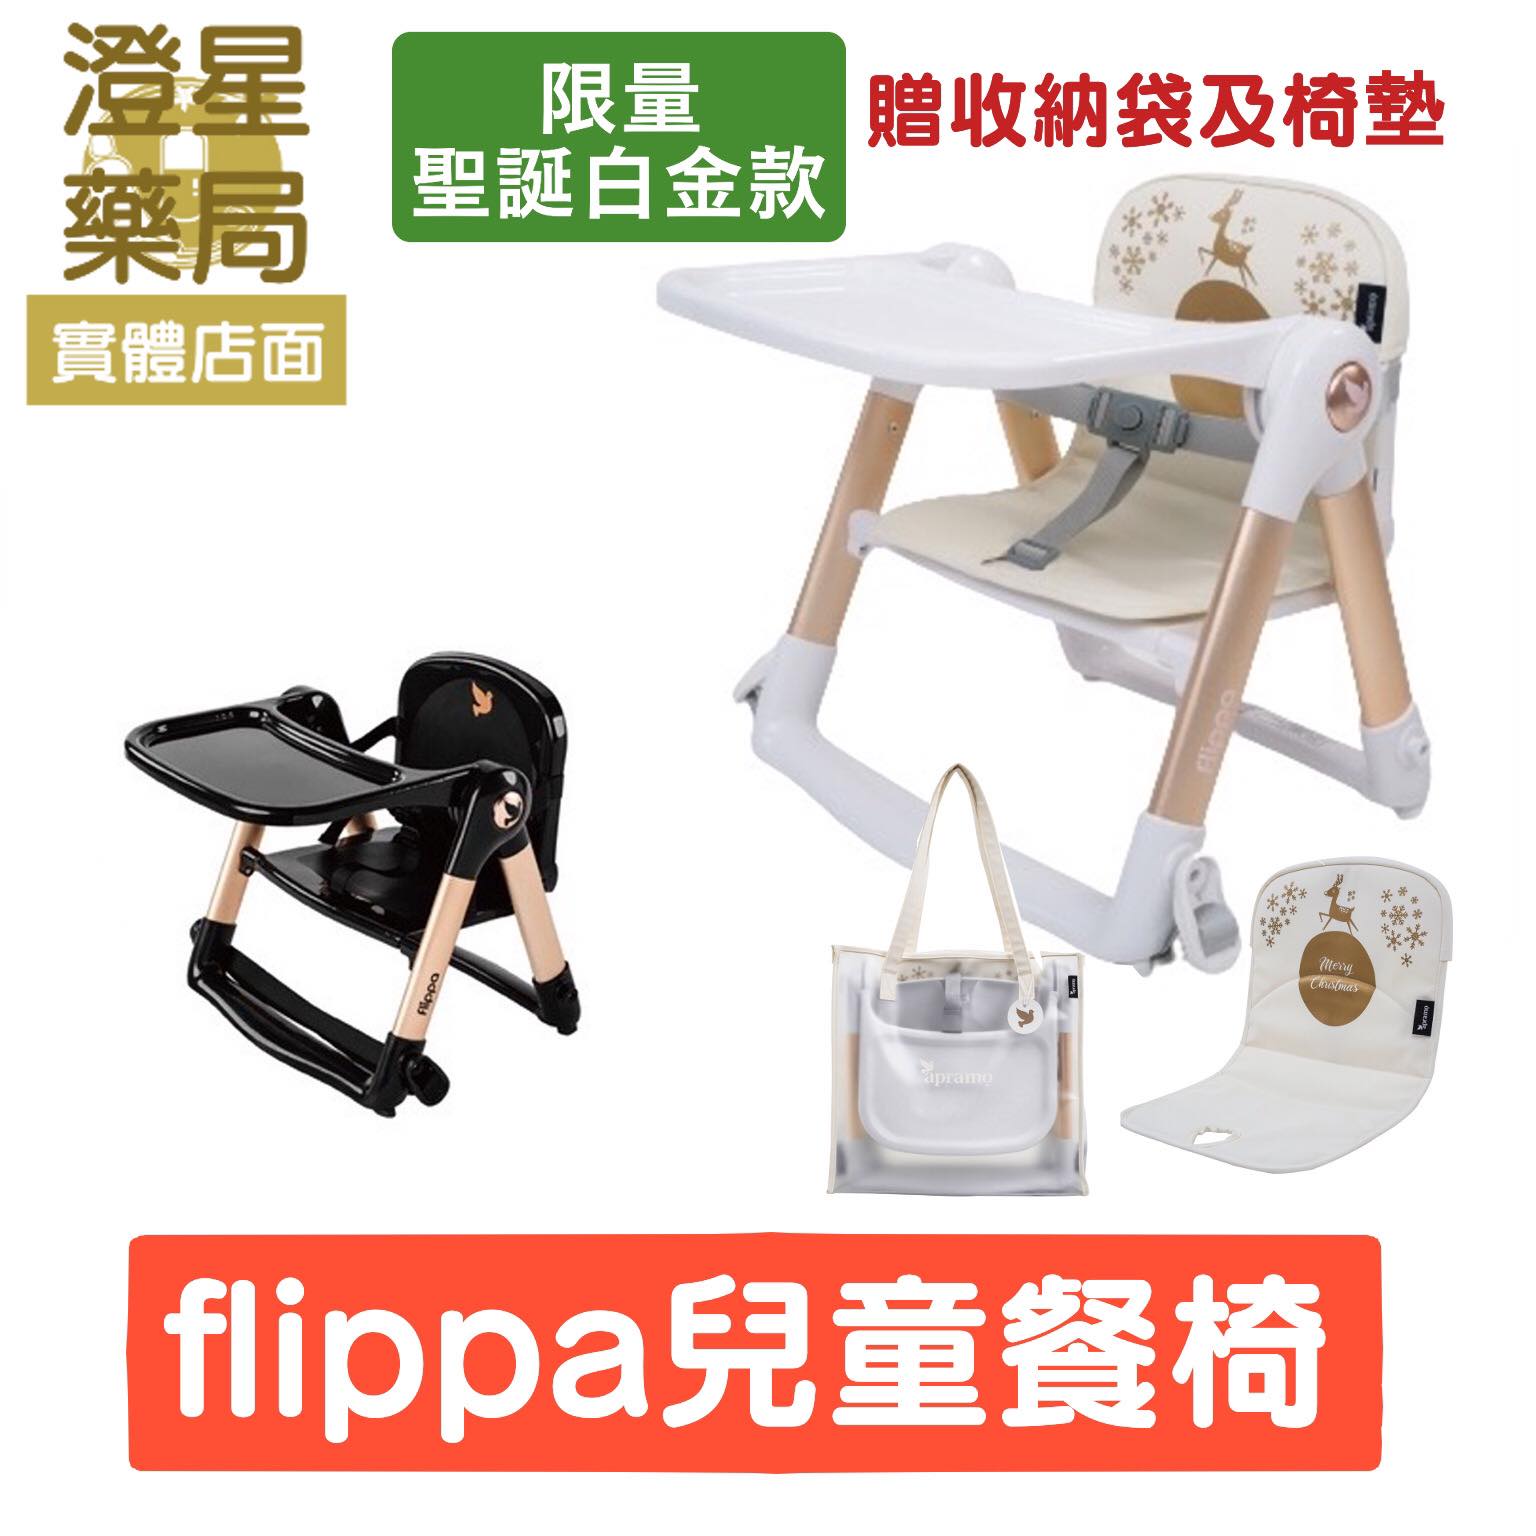 【免運】 APRAMO Flippa 可攜式兩用兒童 餐椅 - 魔法金 聖誕白金 (附原廠提袋、坐墊)